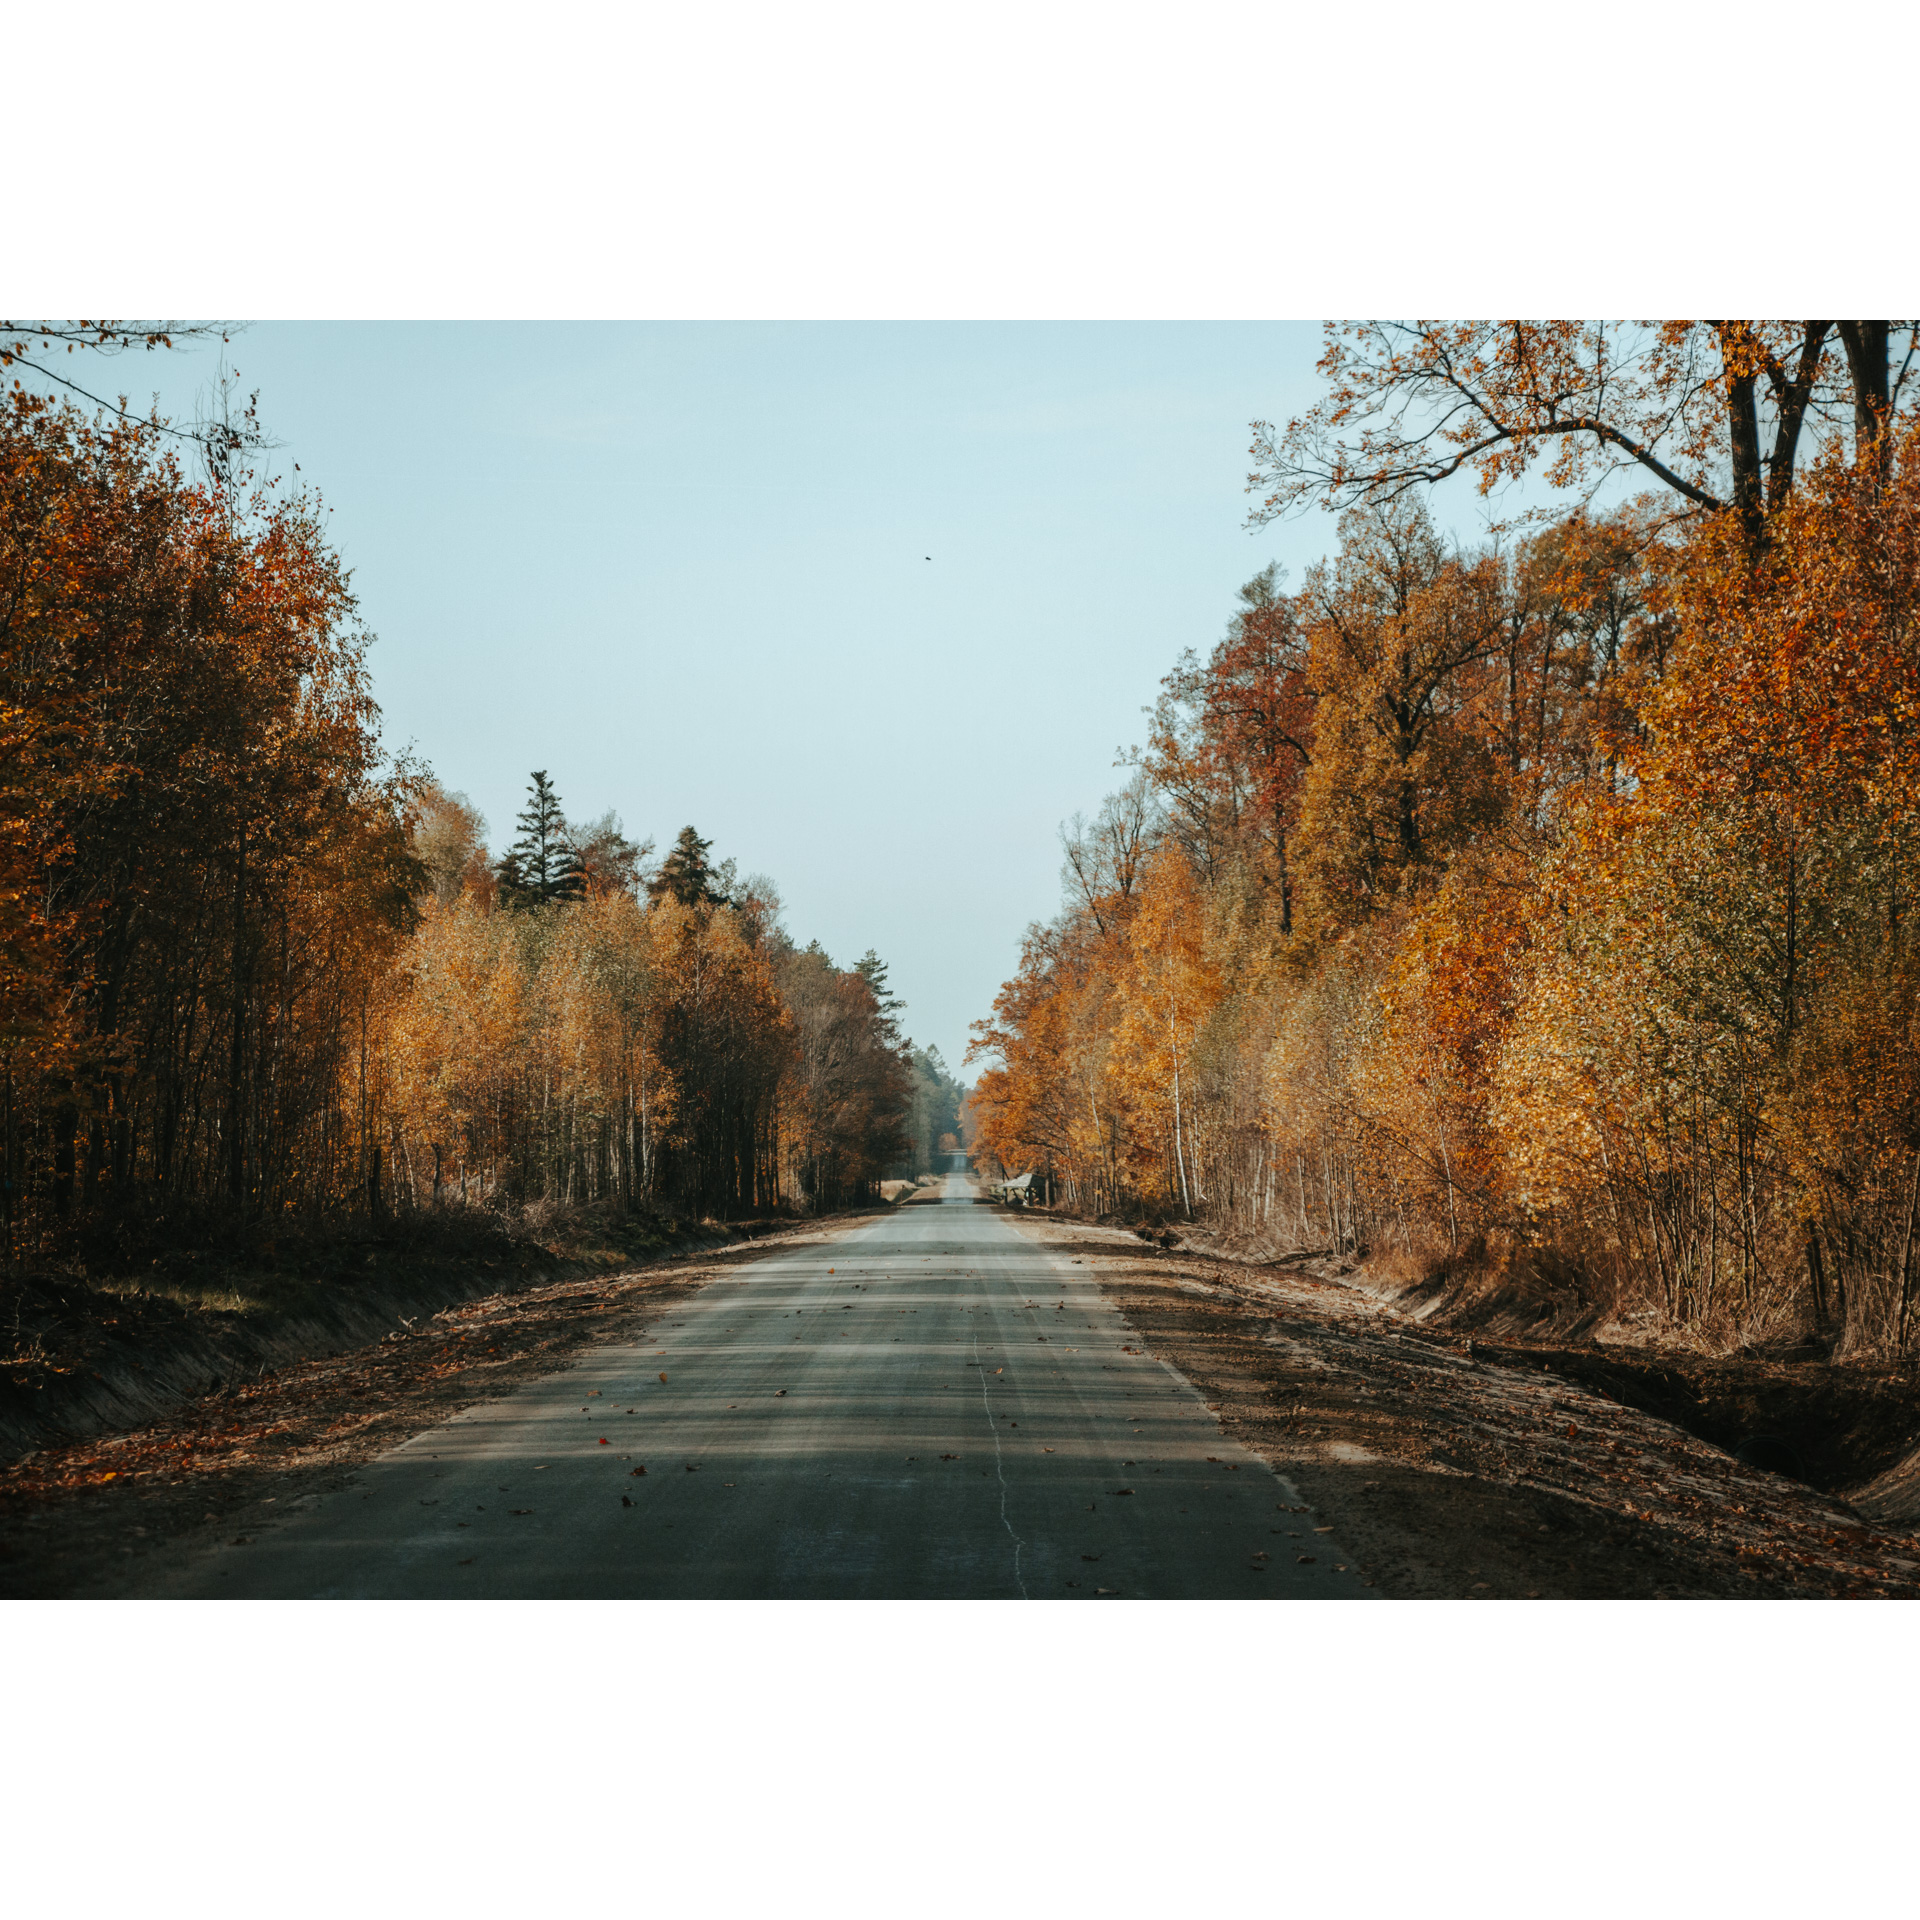 Prosta, asfaltowa droga biegnąca między drzewami w brązowo-beżowo-pomarańczowych barwach 